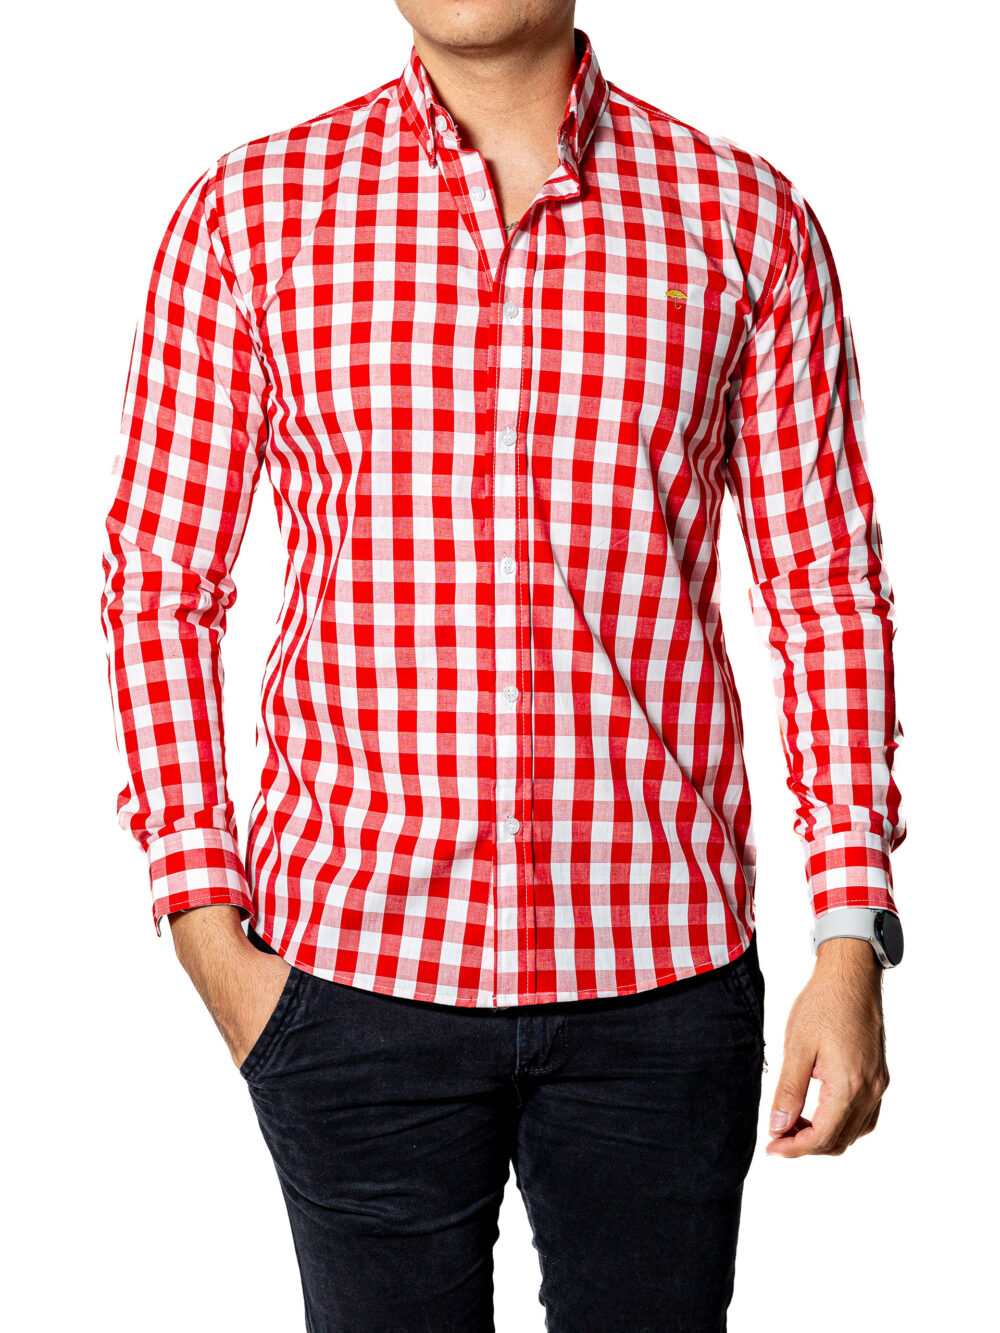 Camisa Hombre Casual Slim Fit Cuadros Rojos, Blancos 004 5